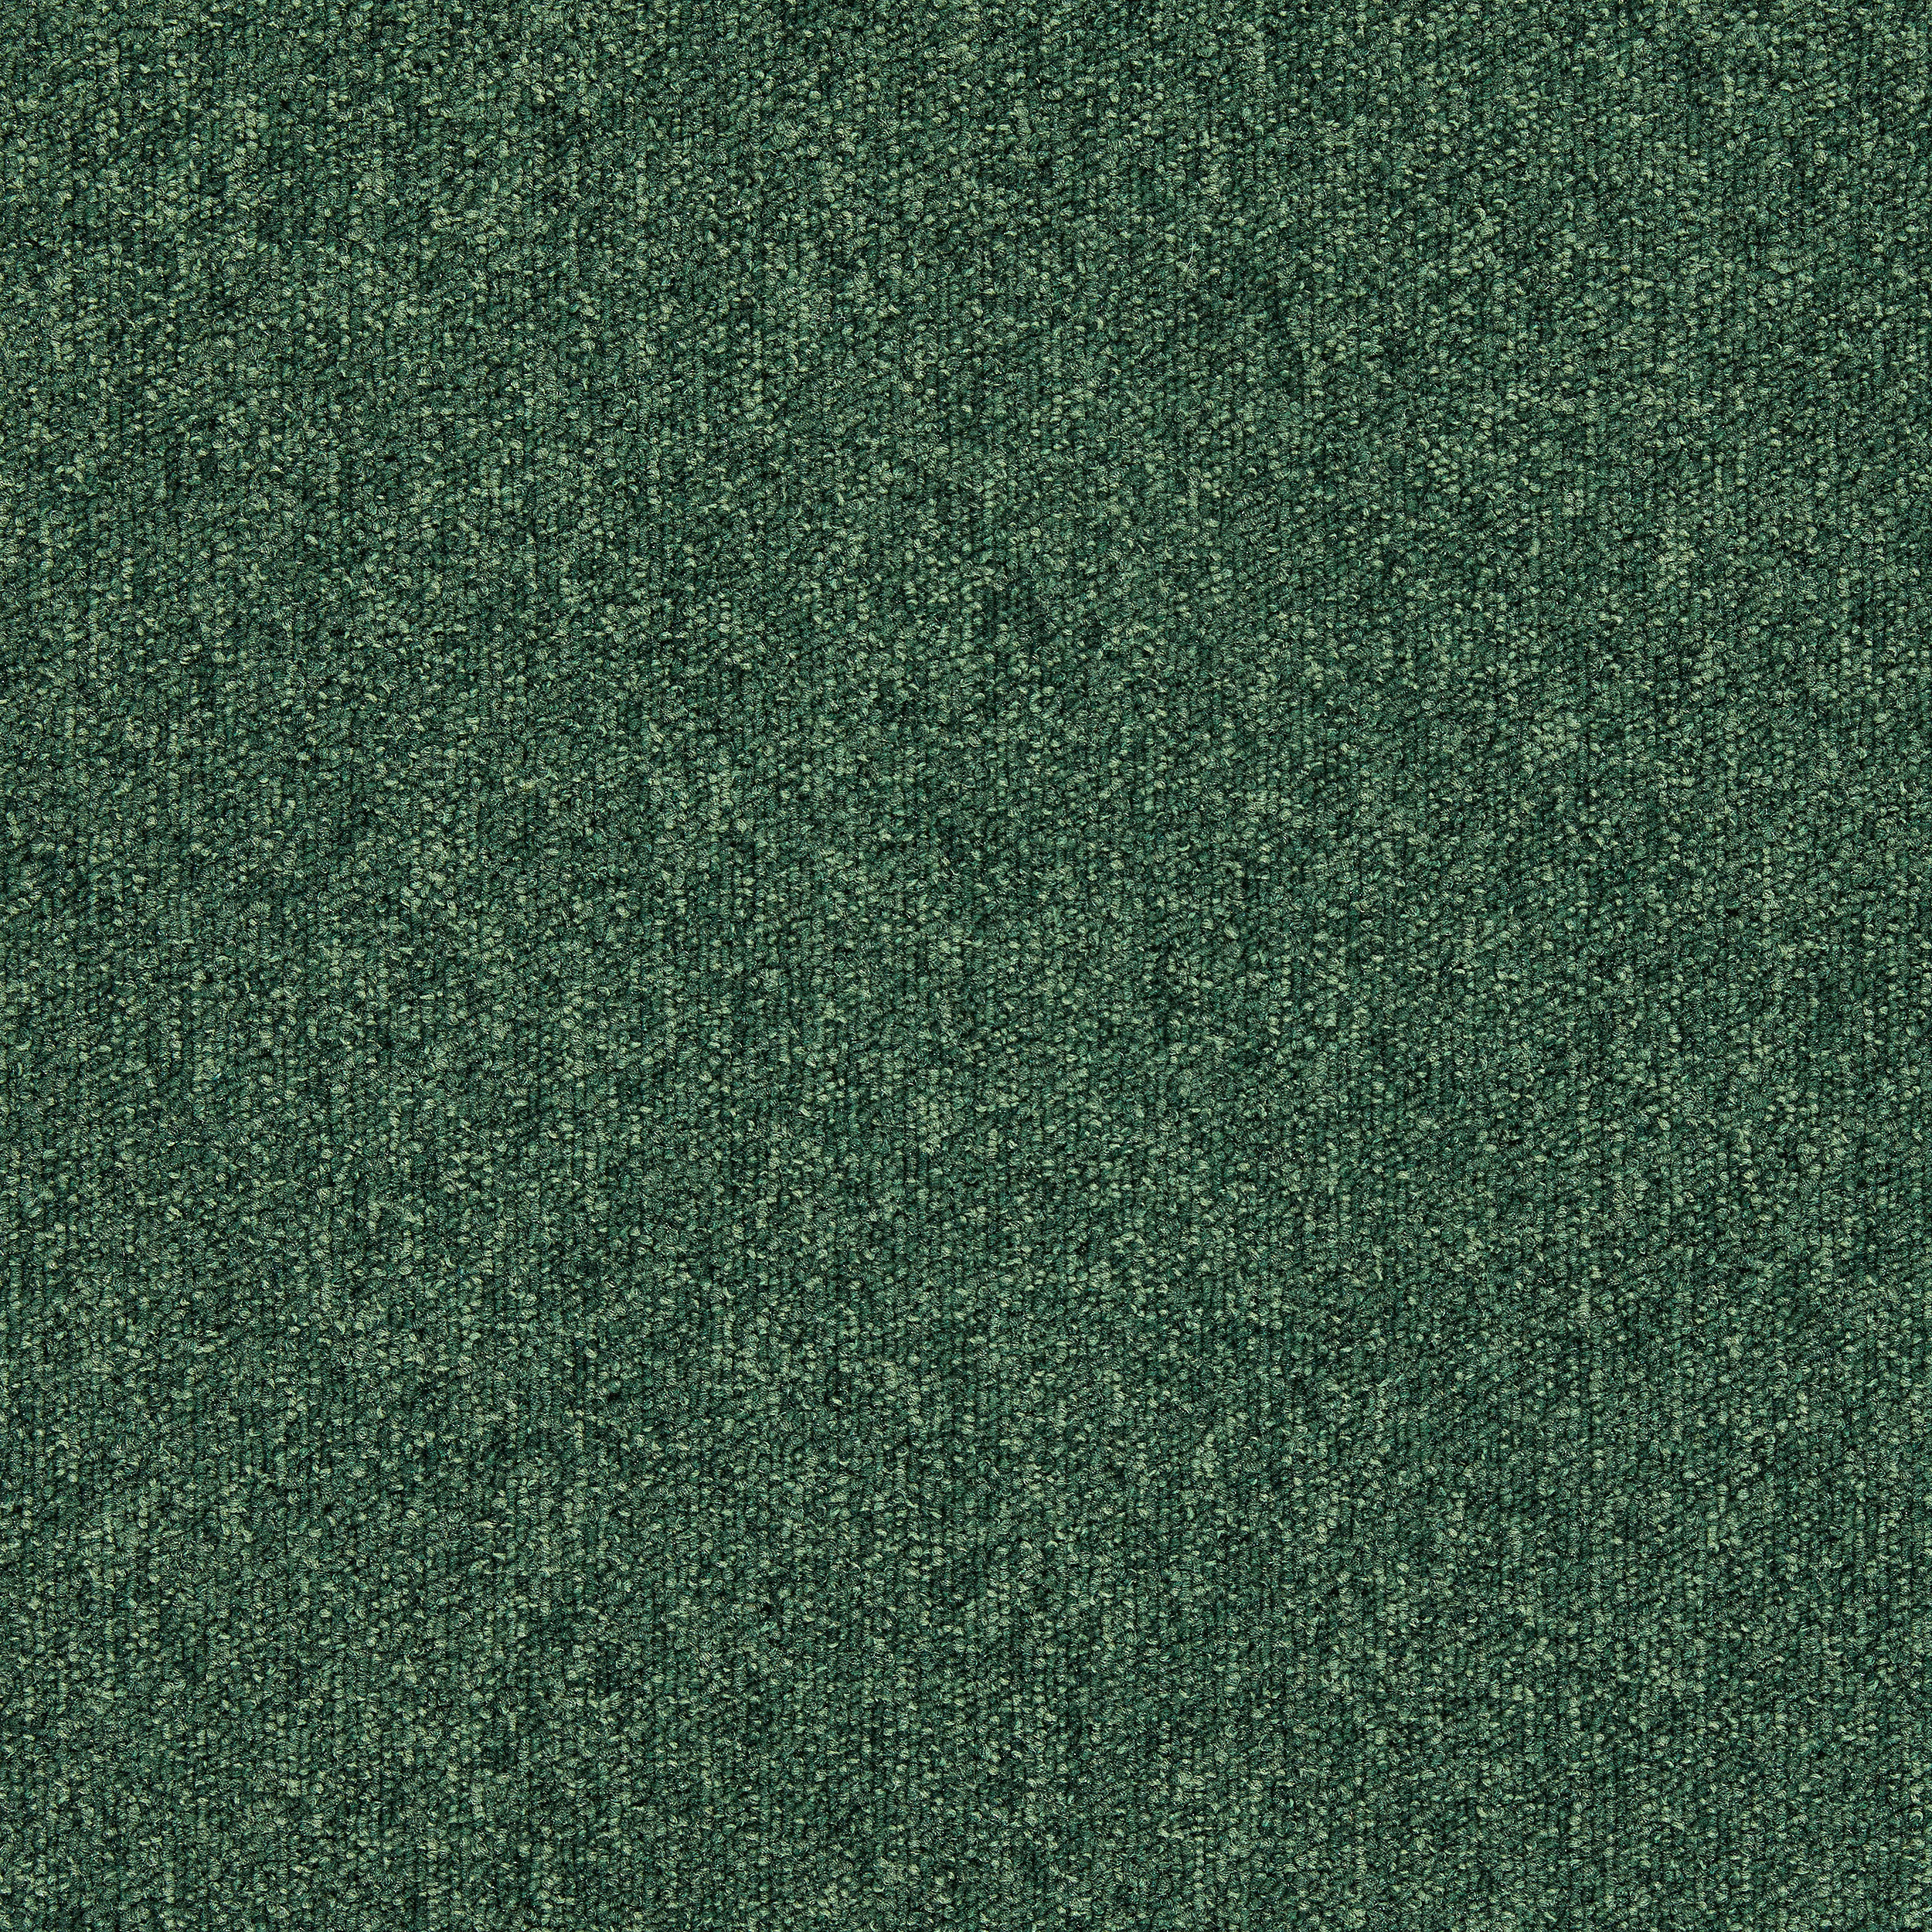 Heuga 727 Carpet Tile In Bottle Green afbeeldingnummer 15